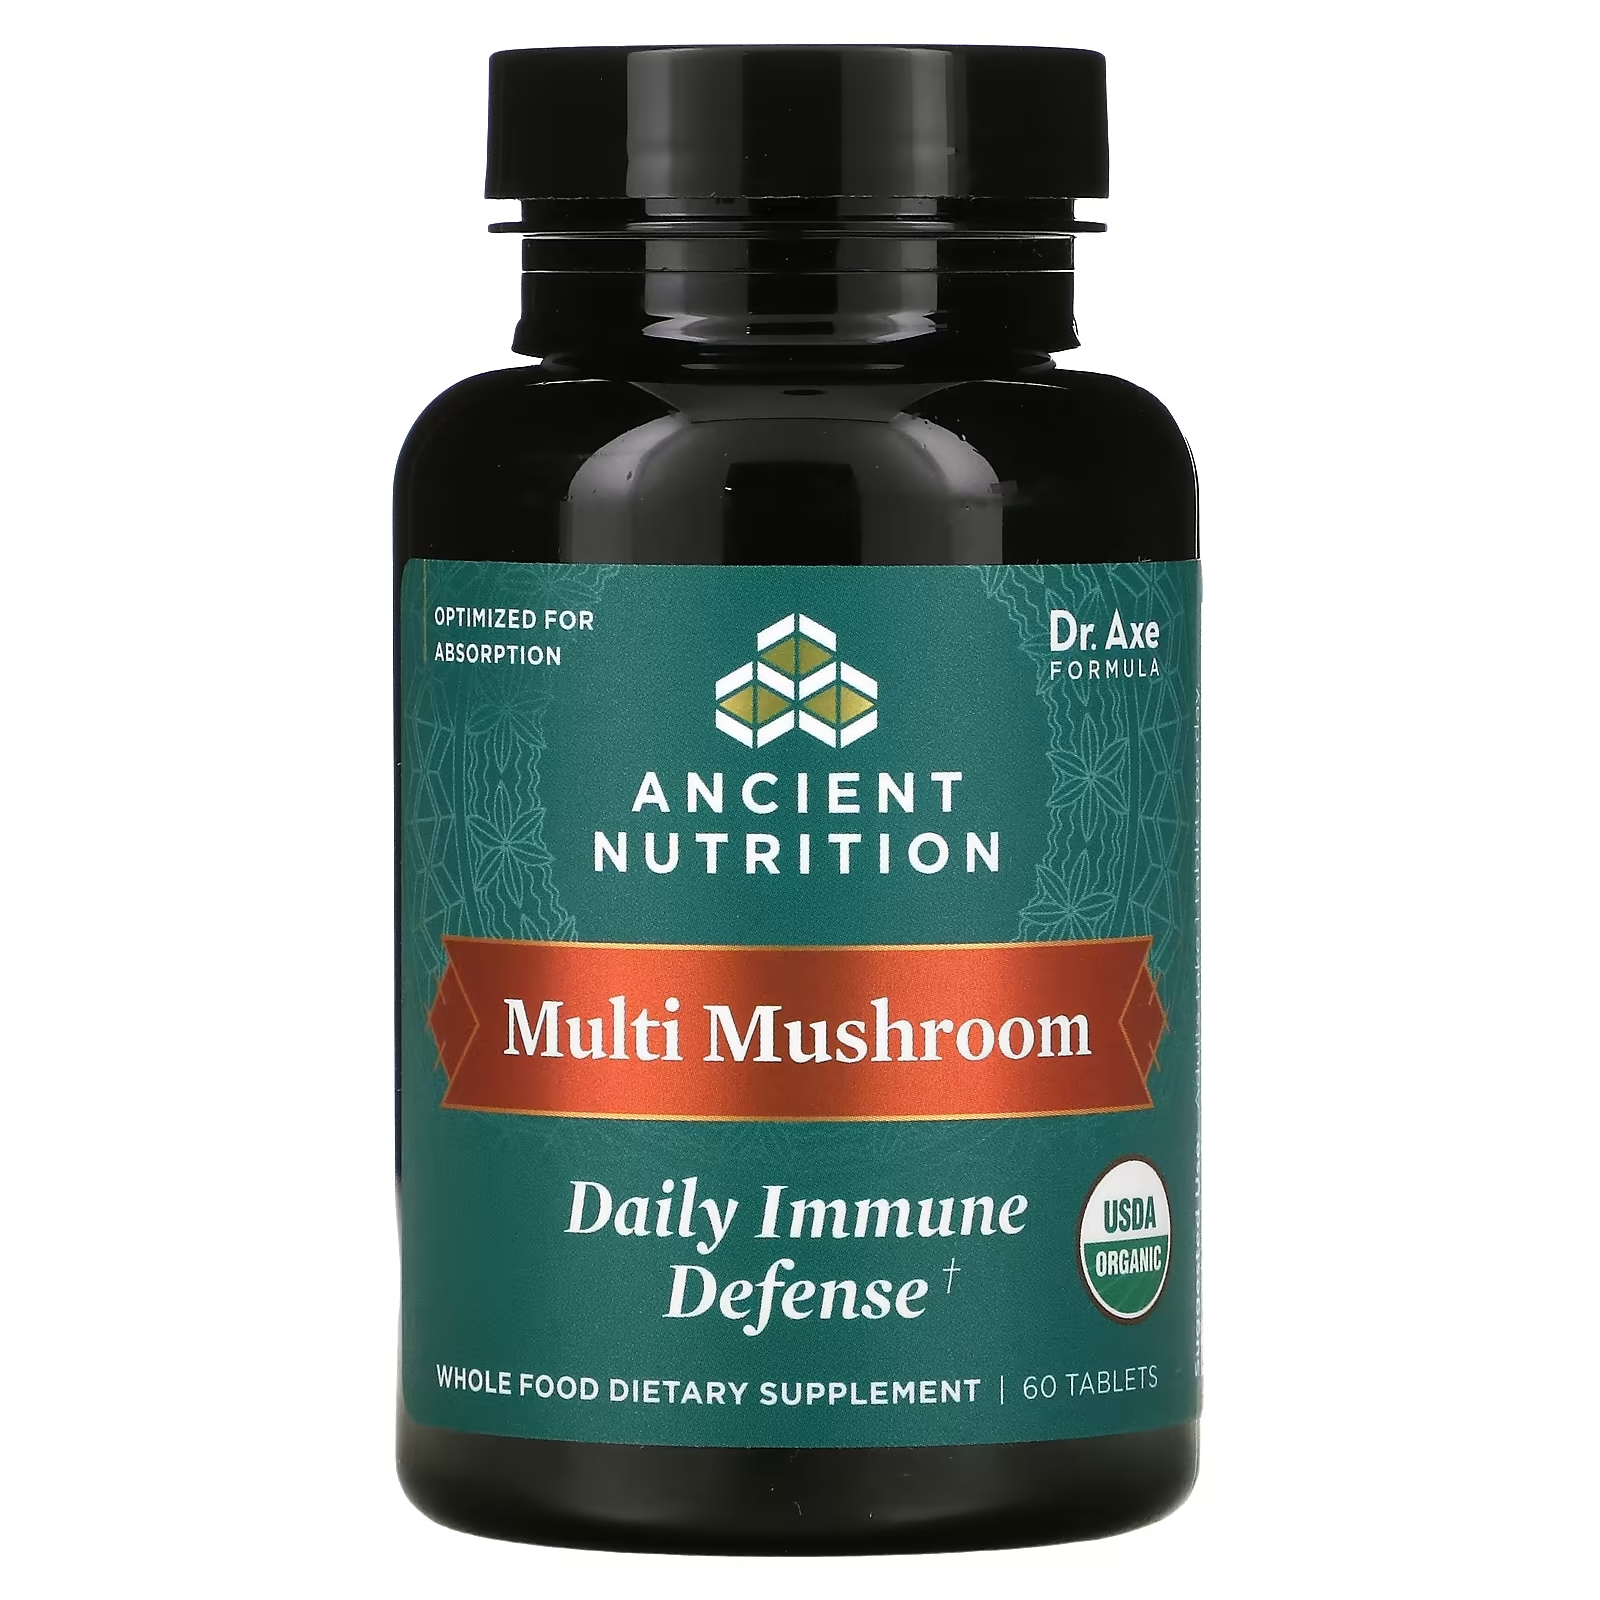 Dr. Axe Ancient Nutrition Multi Mushroom ежедневная защита иммунитета, 60 таблеток megafood ежедневная поддержка иммунитета 60 таблеток